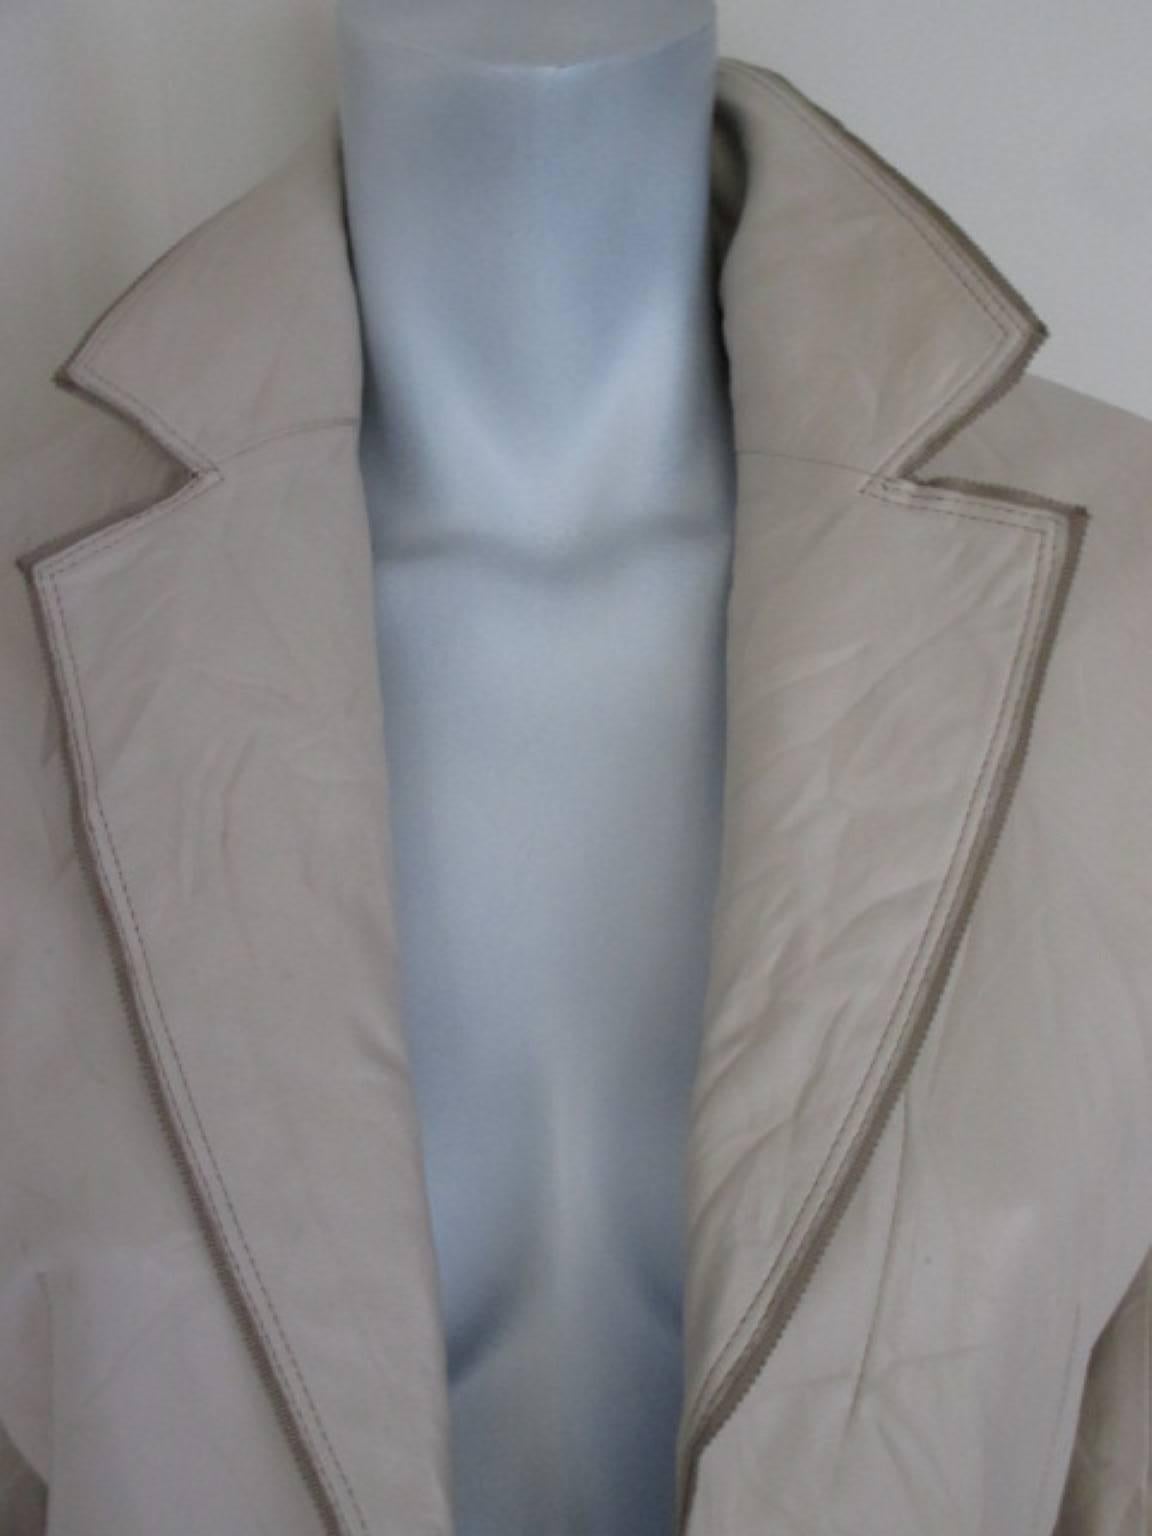 Ce manteau est fait de cuir souple froissé avec 2 poches et 2 boutons.
La couleur est crème/blanc cassé
Il est en assez bon état avec une certaine usure et une petite rayure sur la manche droite.
Semble être US 8/ EU38, veuillez vous référer aux